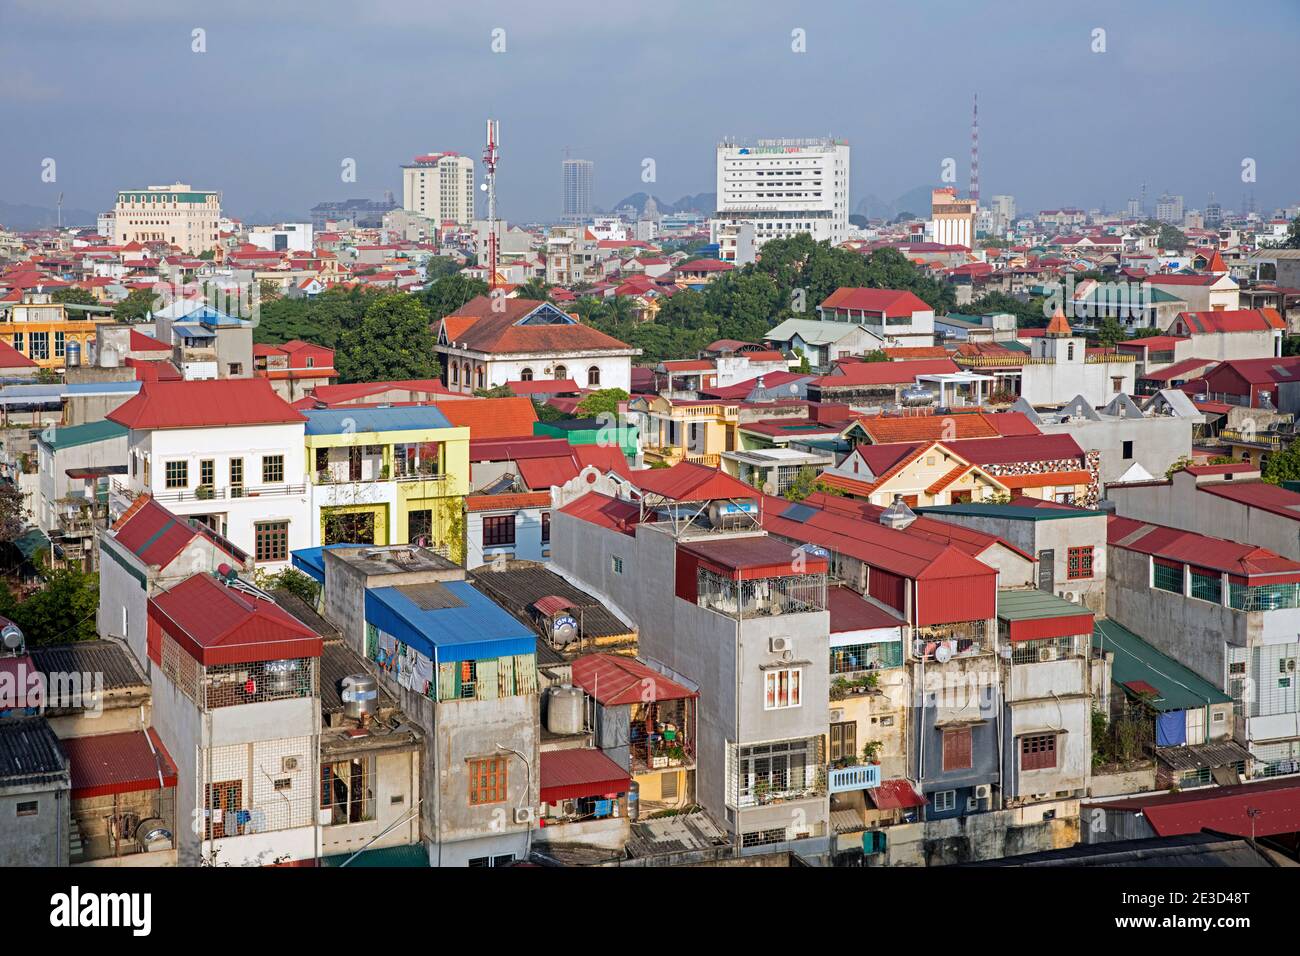 Vue aérienne sur les maisons et les appartements colorés de la ville Ninh Binh dans le delta de la rivière Rouge du nord du Vietnam Banque D'Images